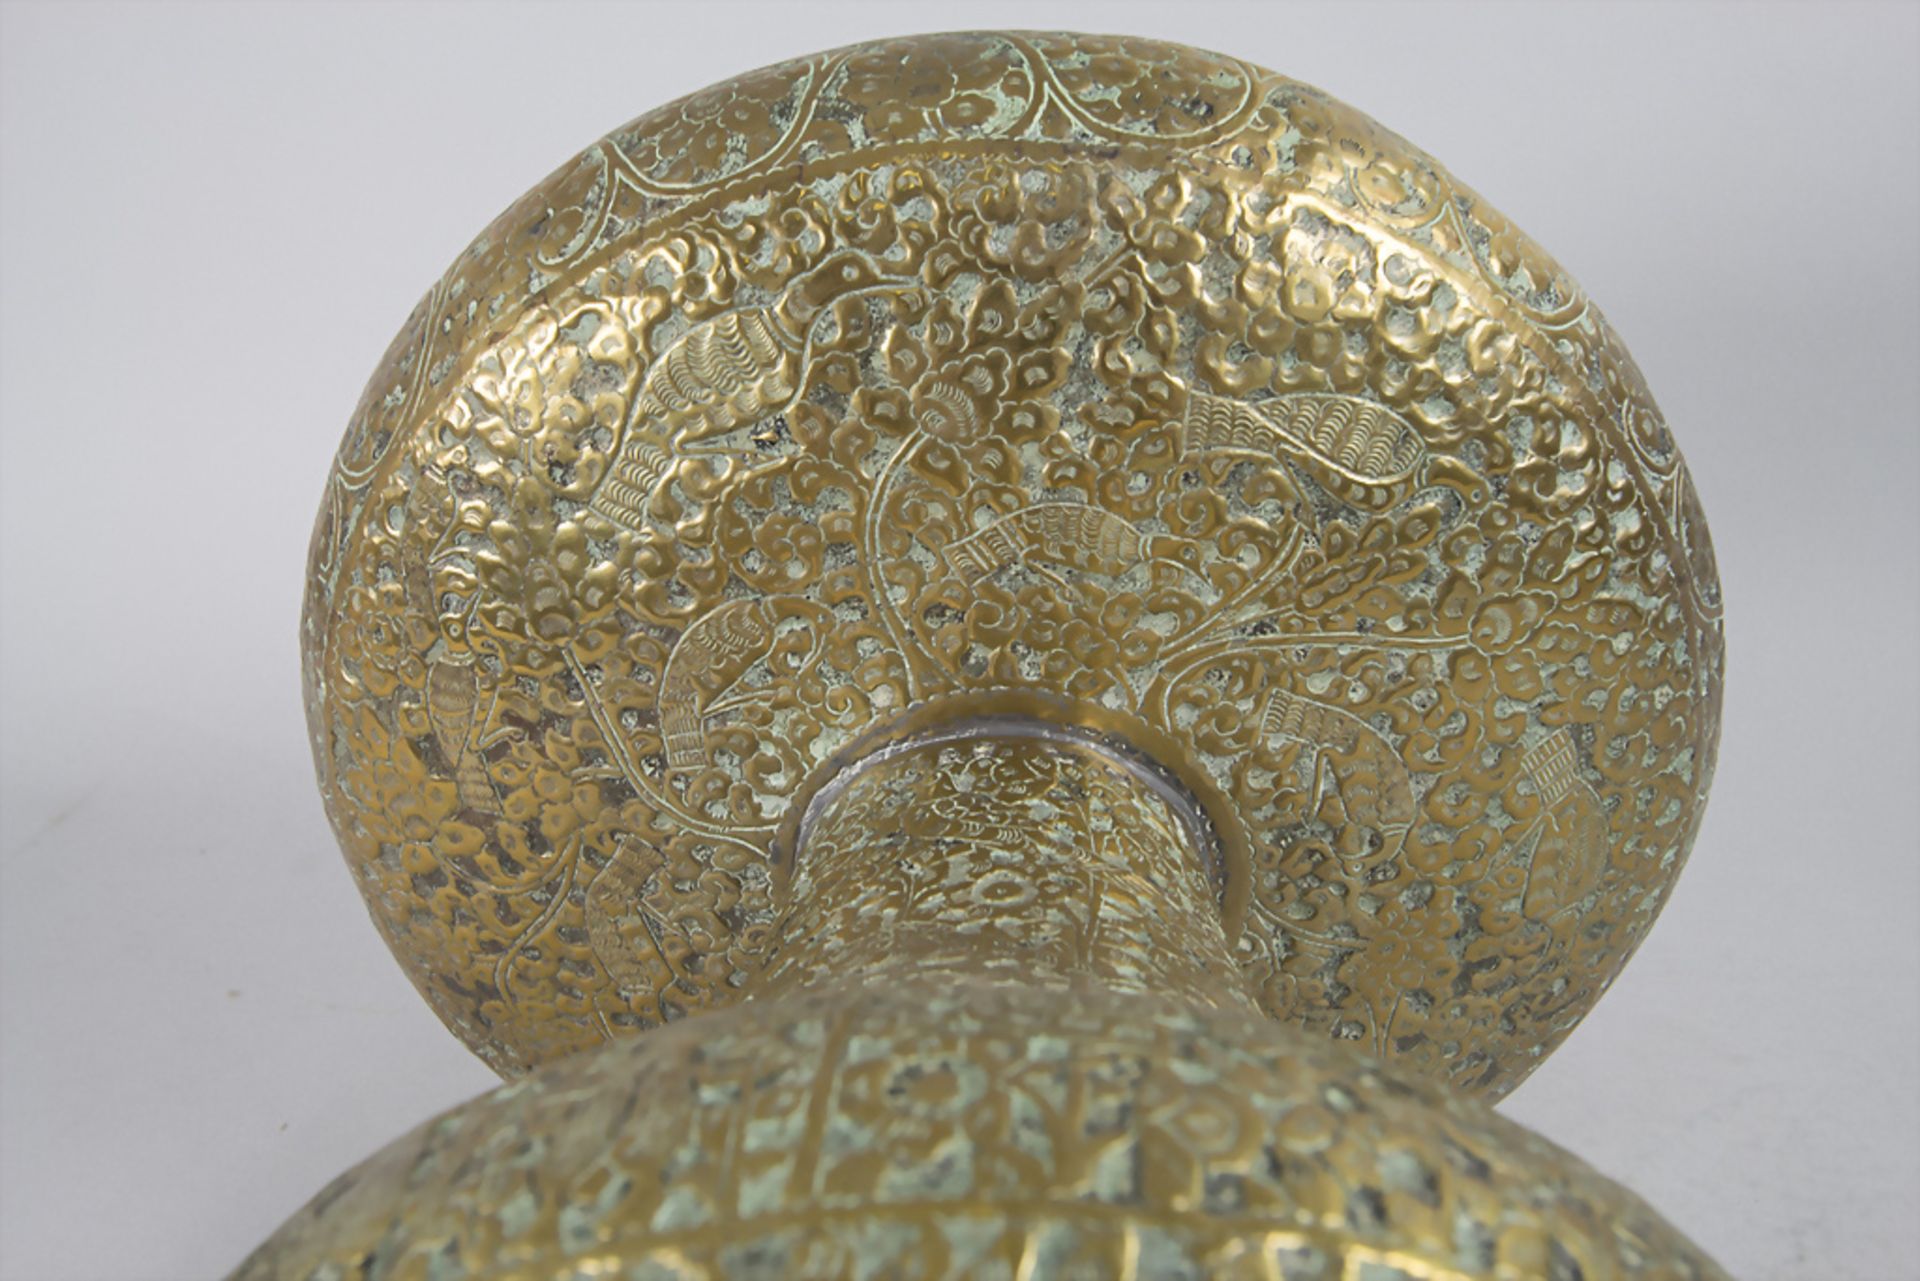 Orientalische Fußschale / An Oriental footed bowl, wohl Persien, um 1920 - Bild 4 aus 6